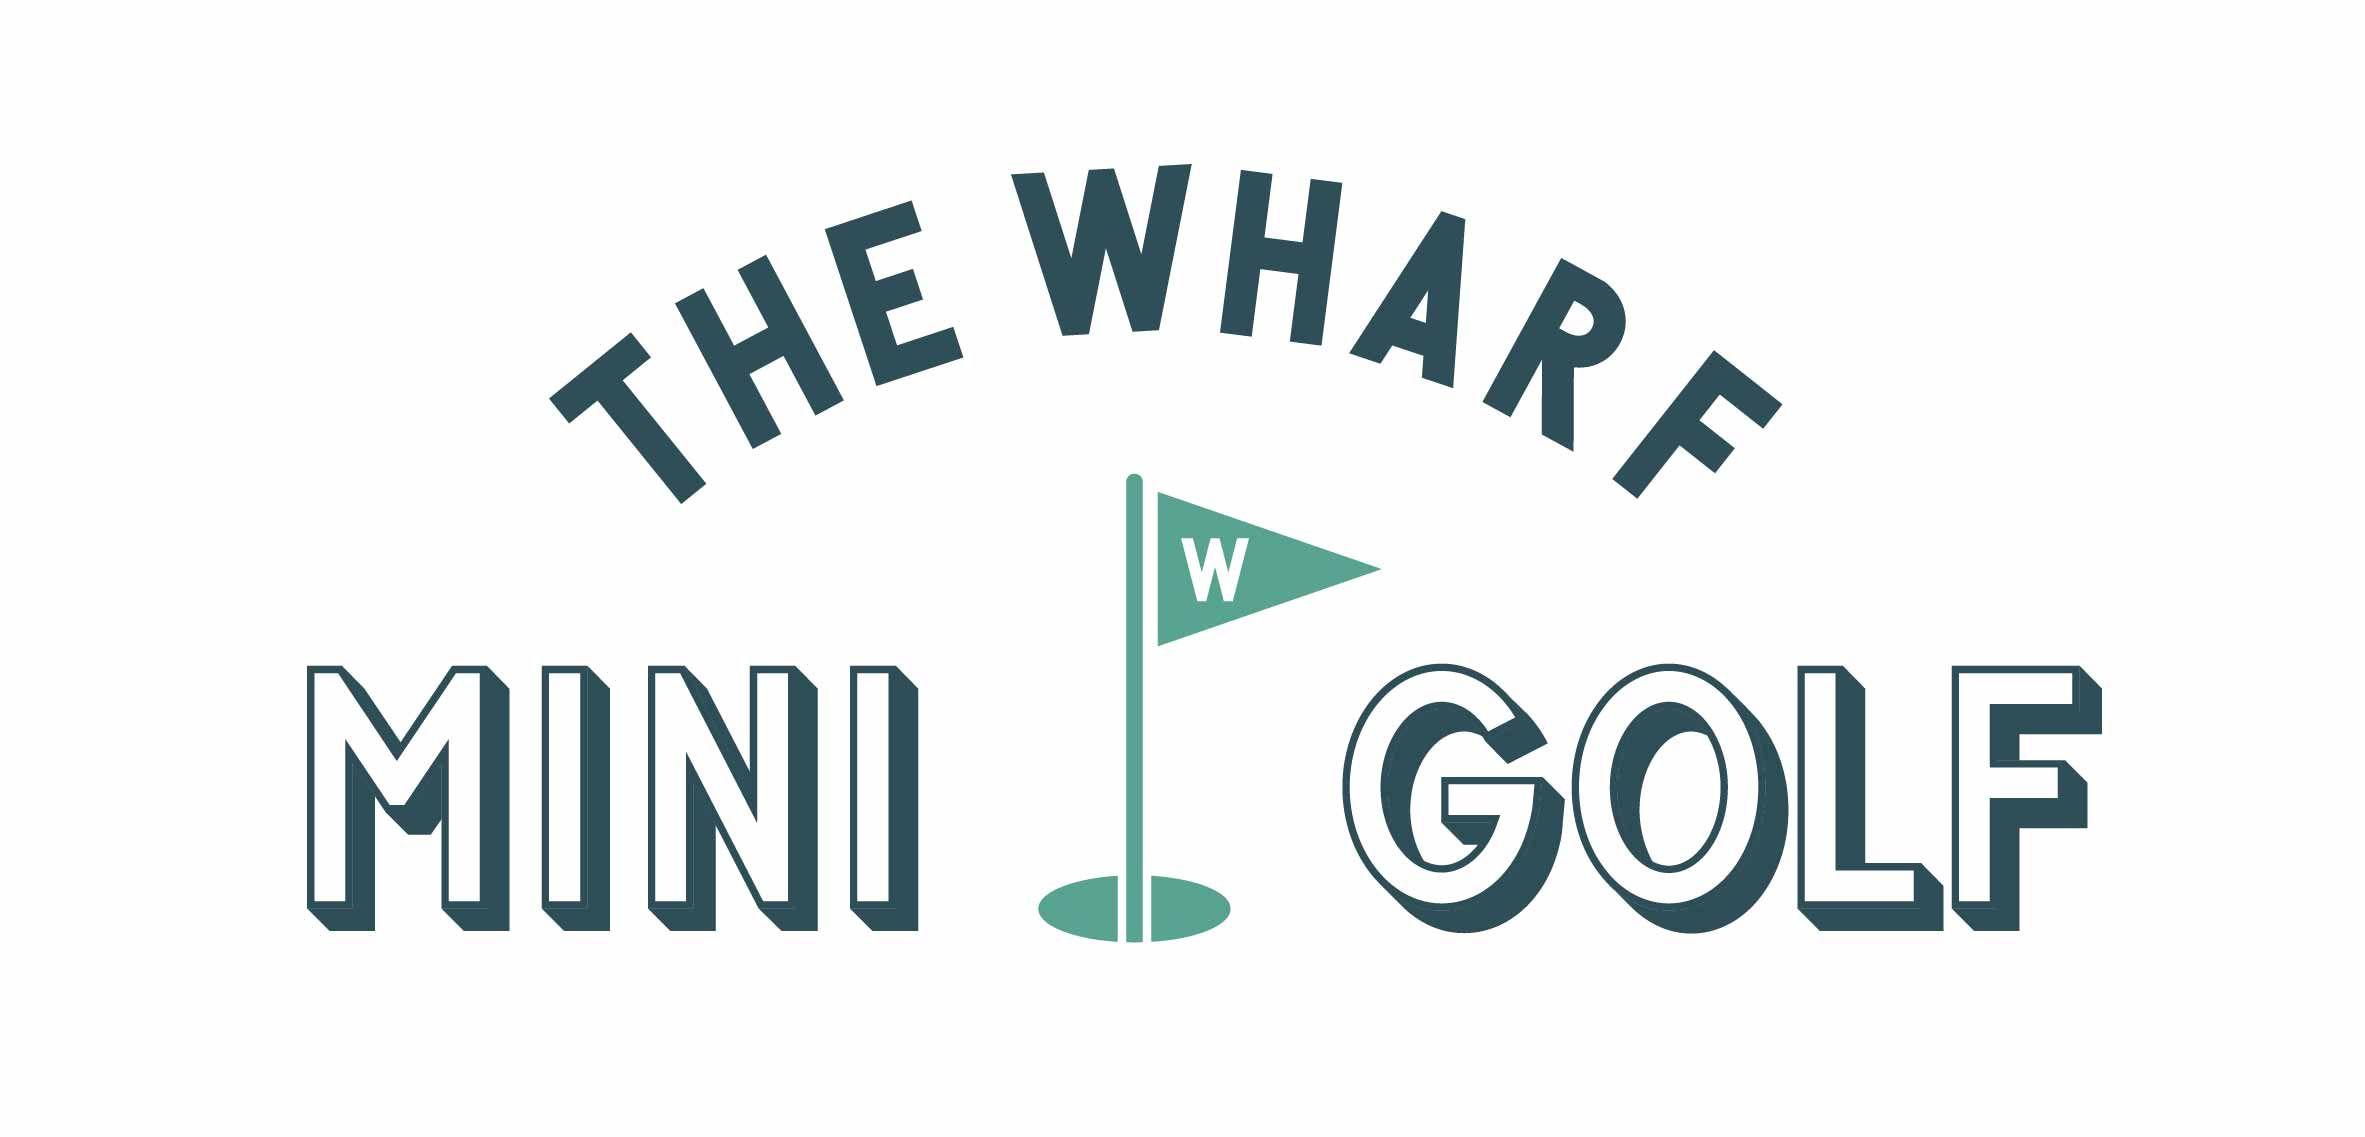 Mini Golf Logo - The Wharf Mini Golf